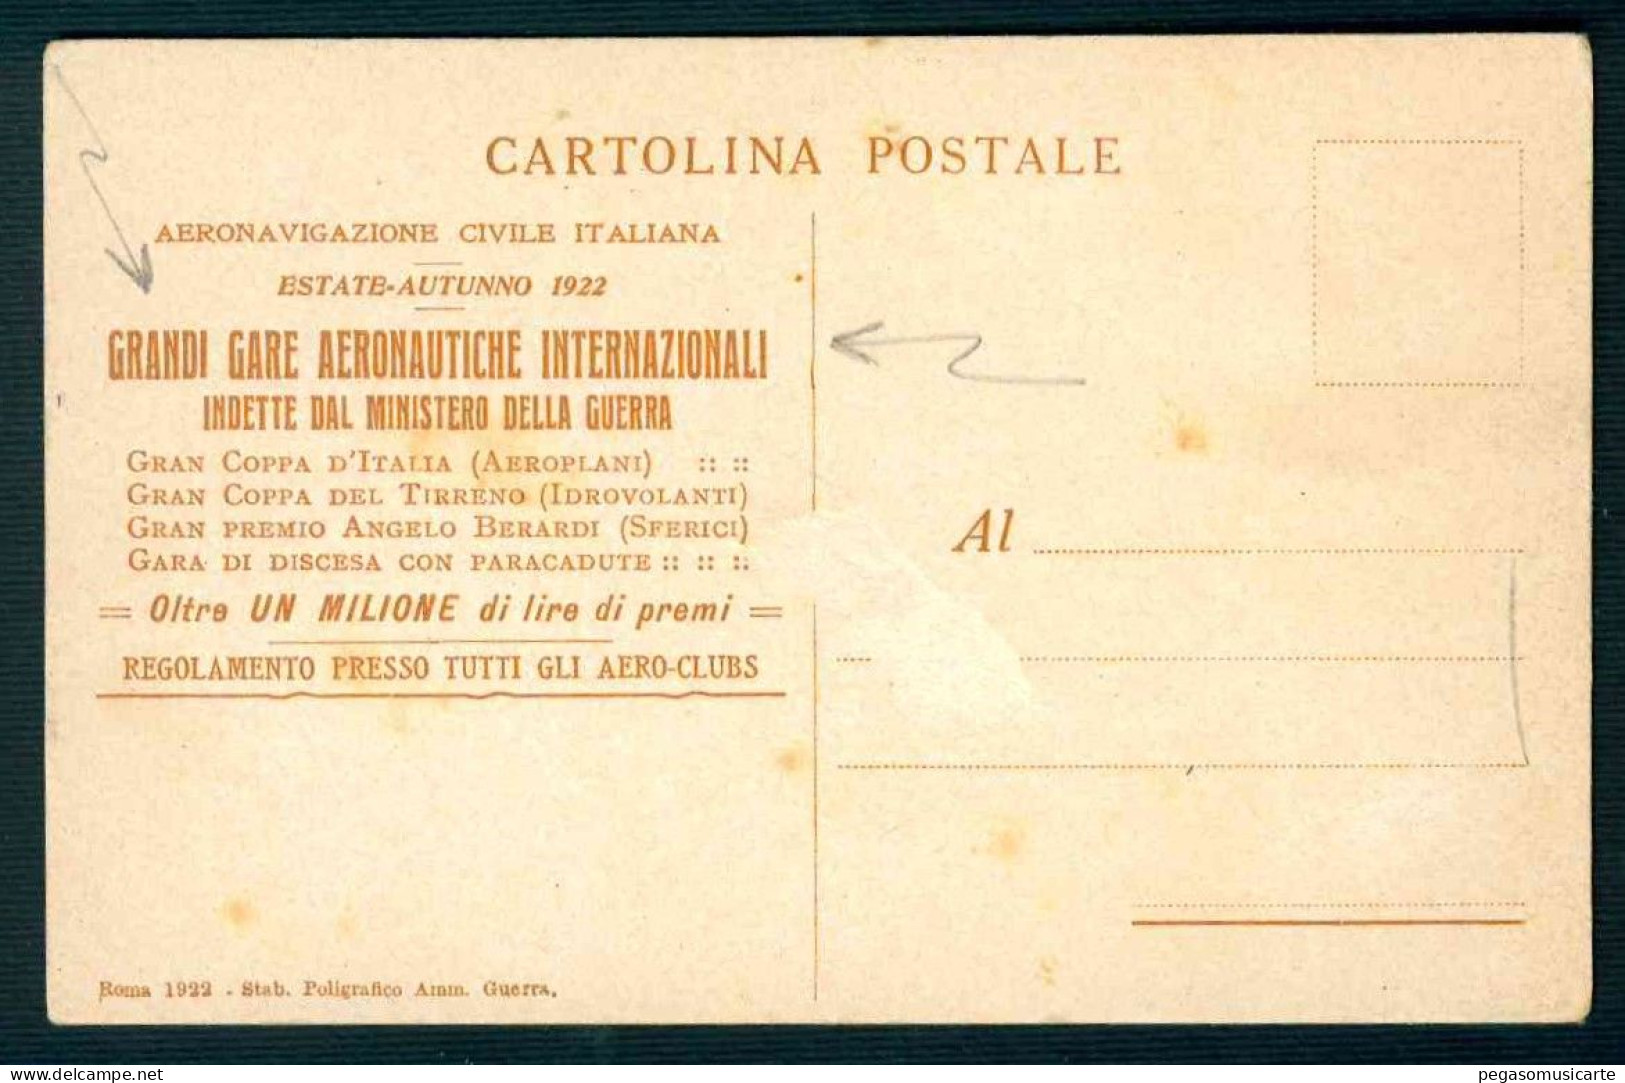 BK045  AERONAVIGAZIONE CIVILE ITALIANA 1922 GRANDI GARE AERONAUTICHE INTERNAZIONALI MINISTERO DELLA GUERRA ILLUSTRATORE - Patriotic